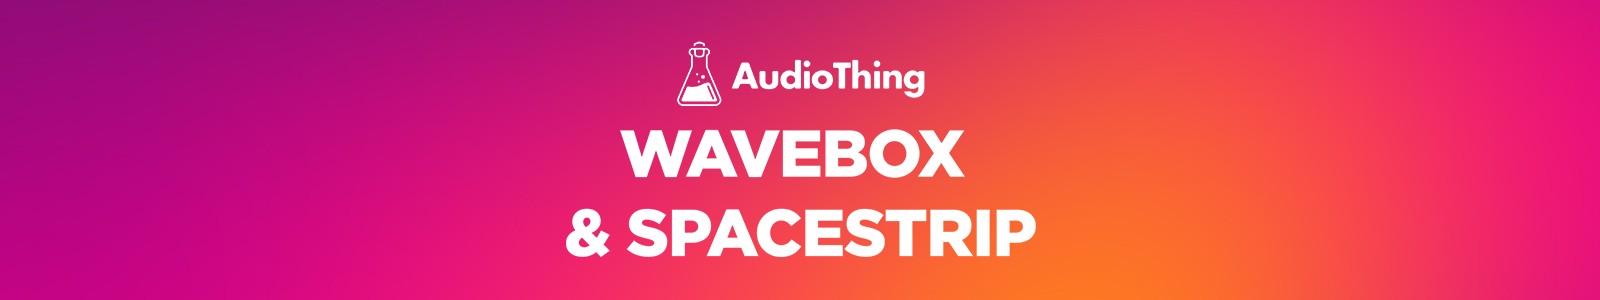 WaveBox & Spacestrip Bundle by AudioThing